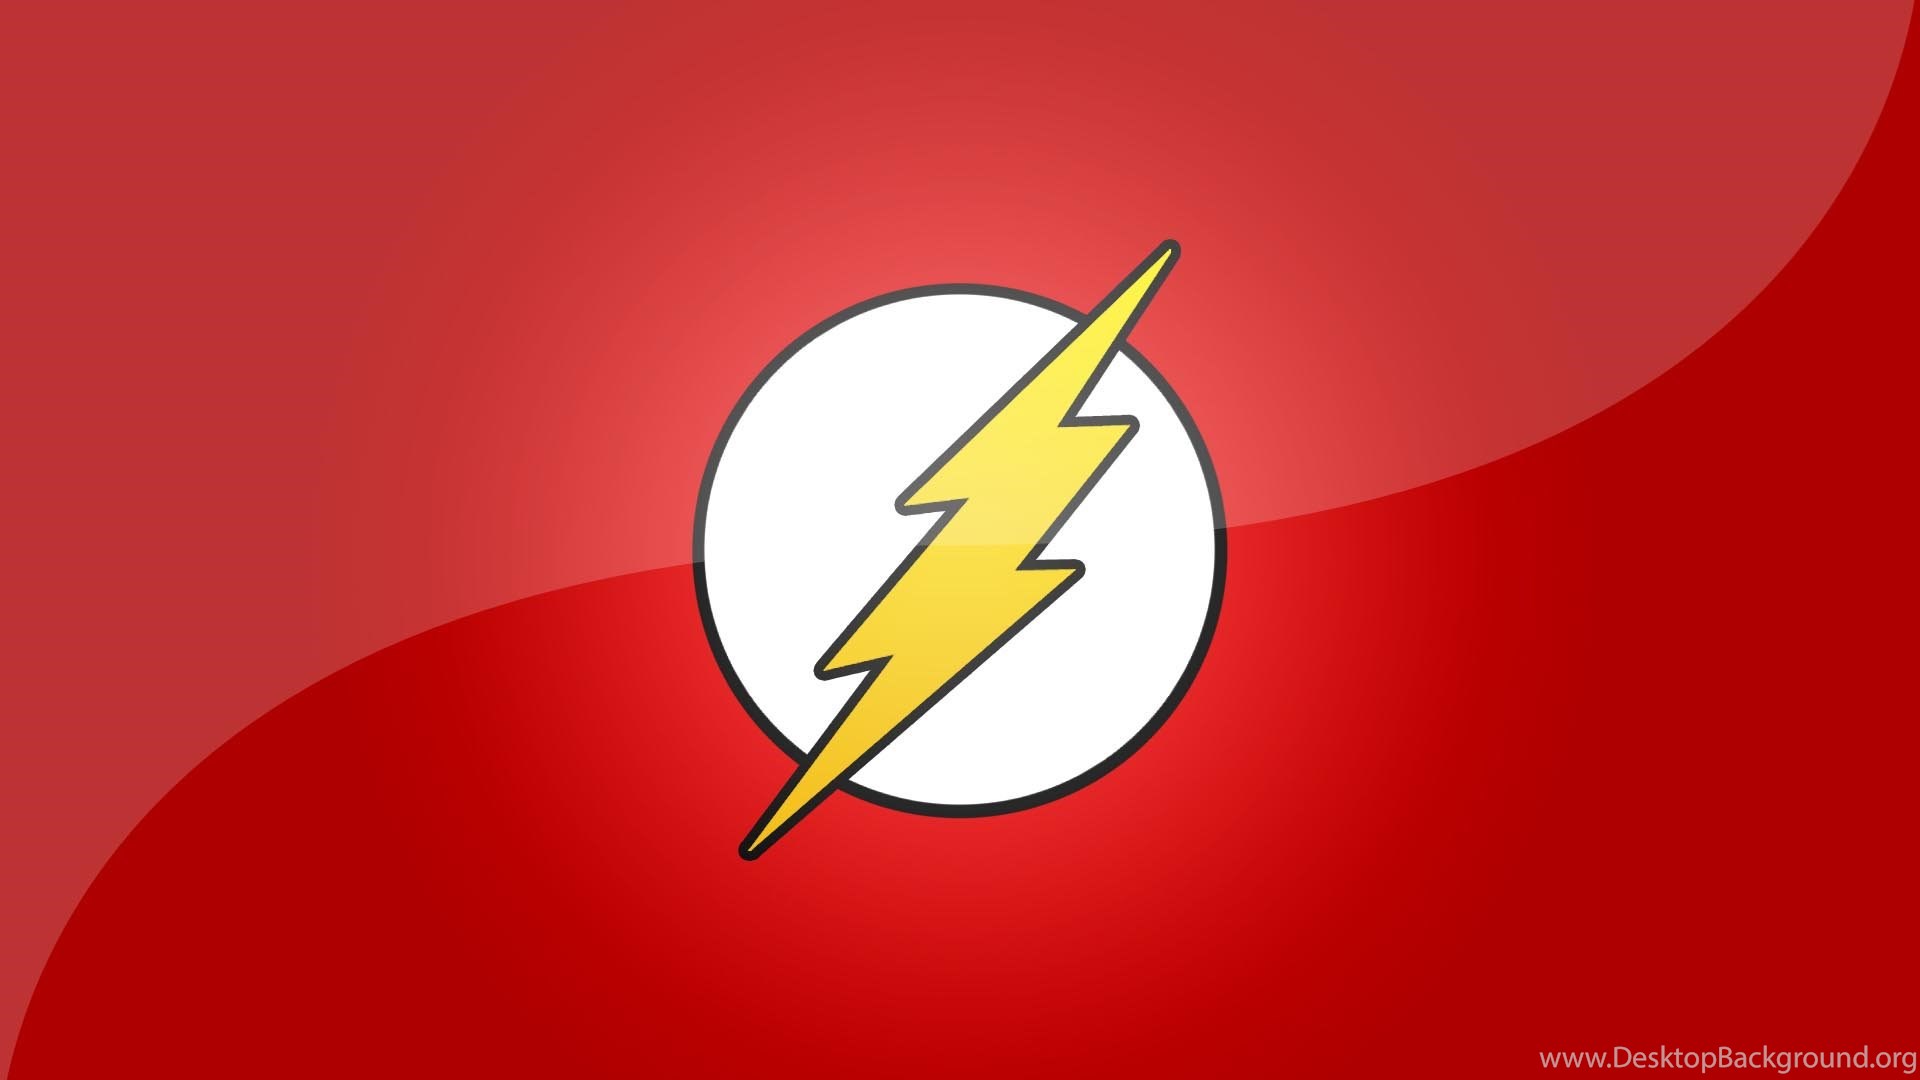 logo flash hd wallpaper,rosso,giallo,veloce,font,grafica